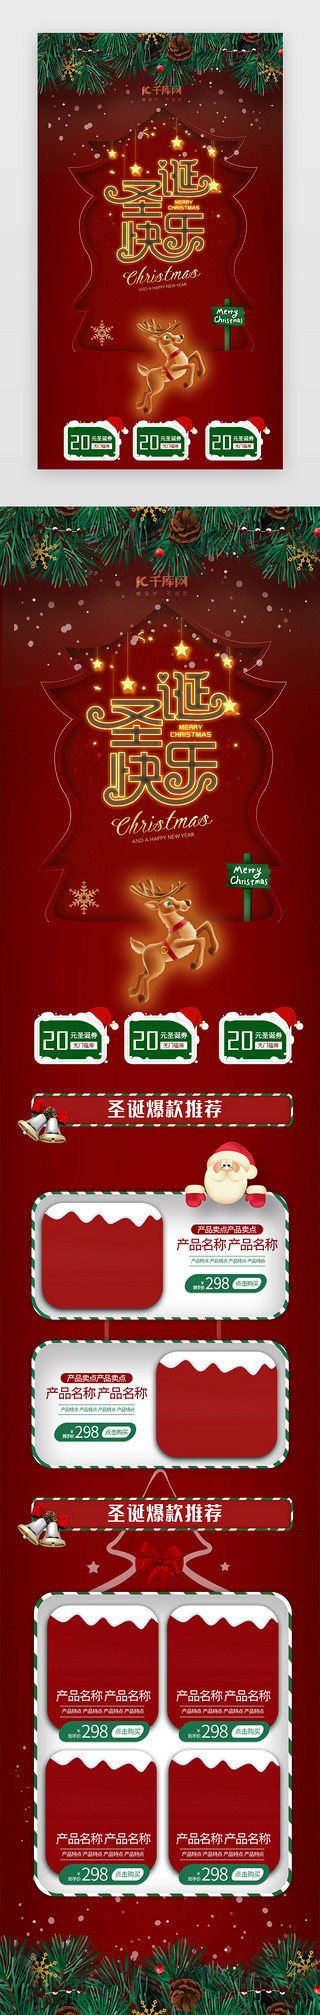 圣诞节木板UI设计素材_红色圣诞节电商促销h5